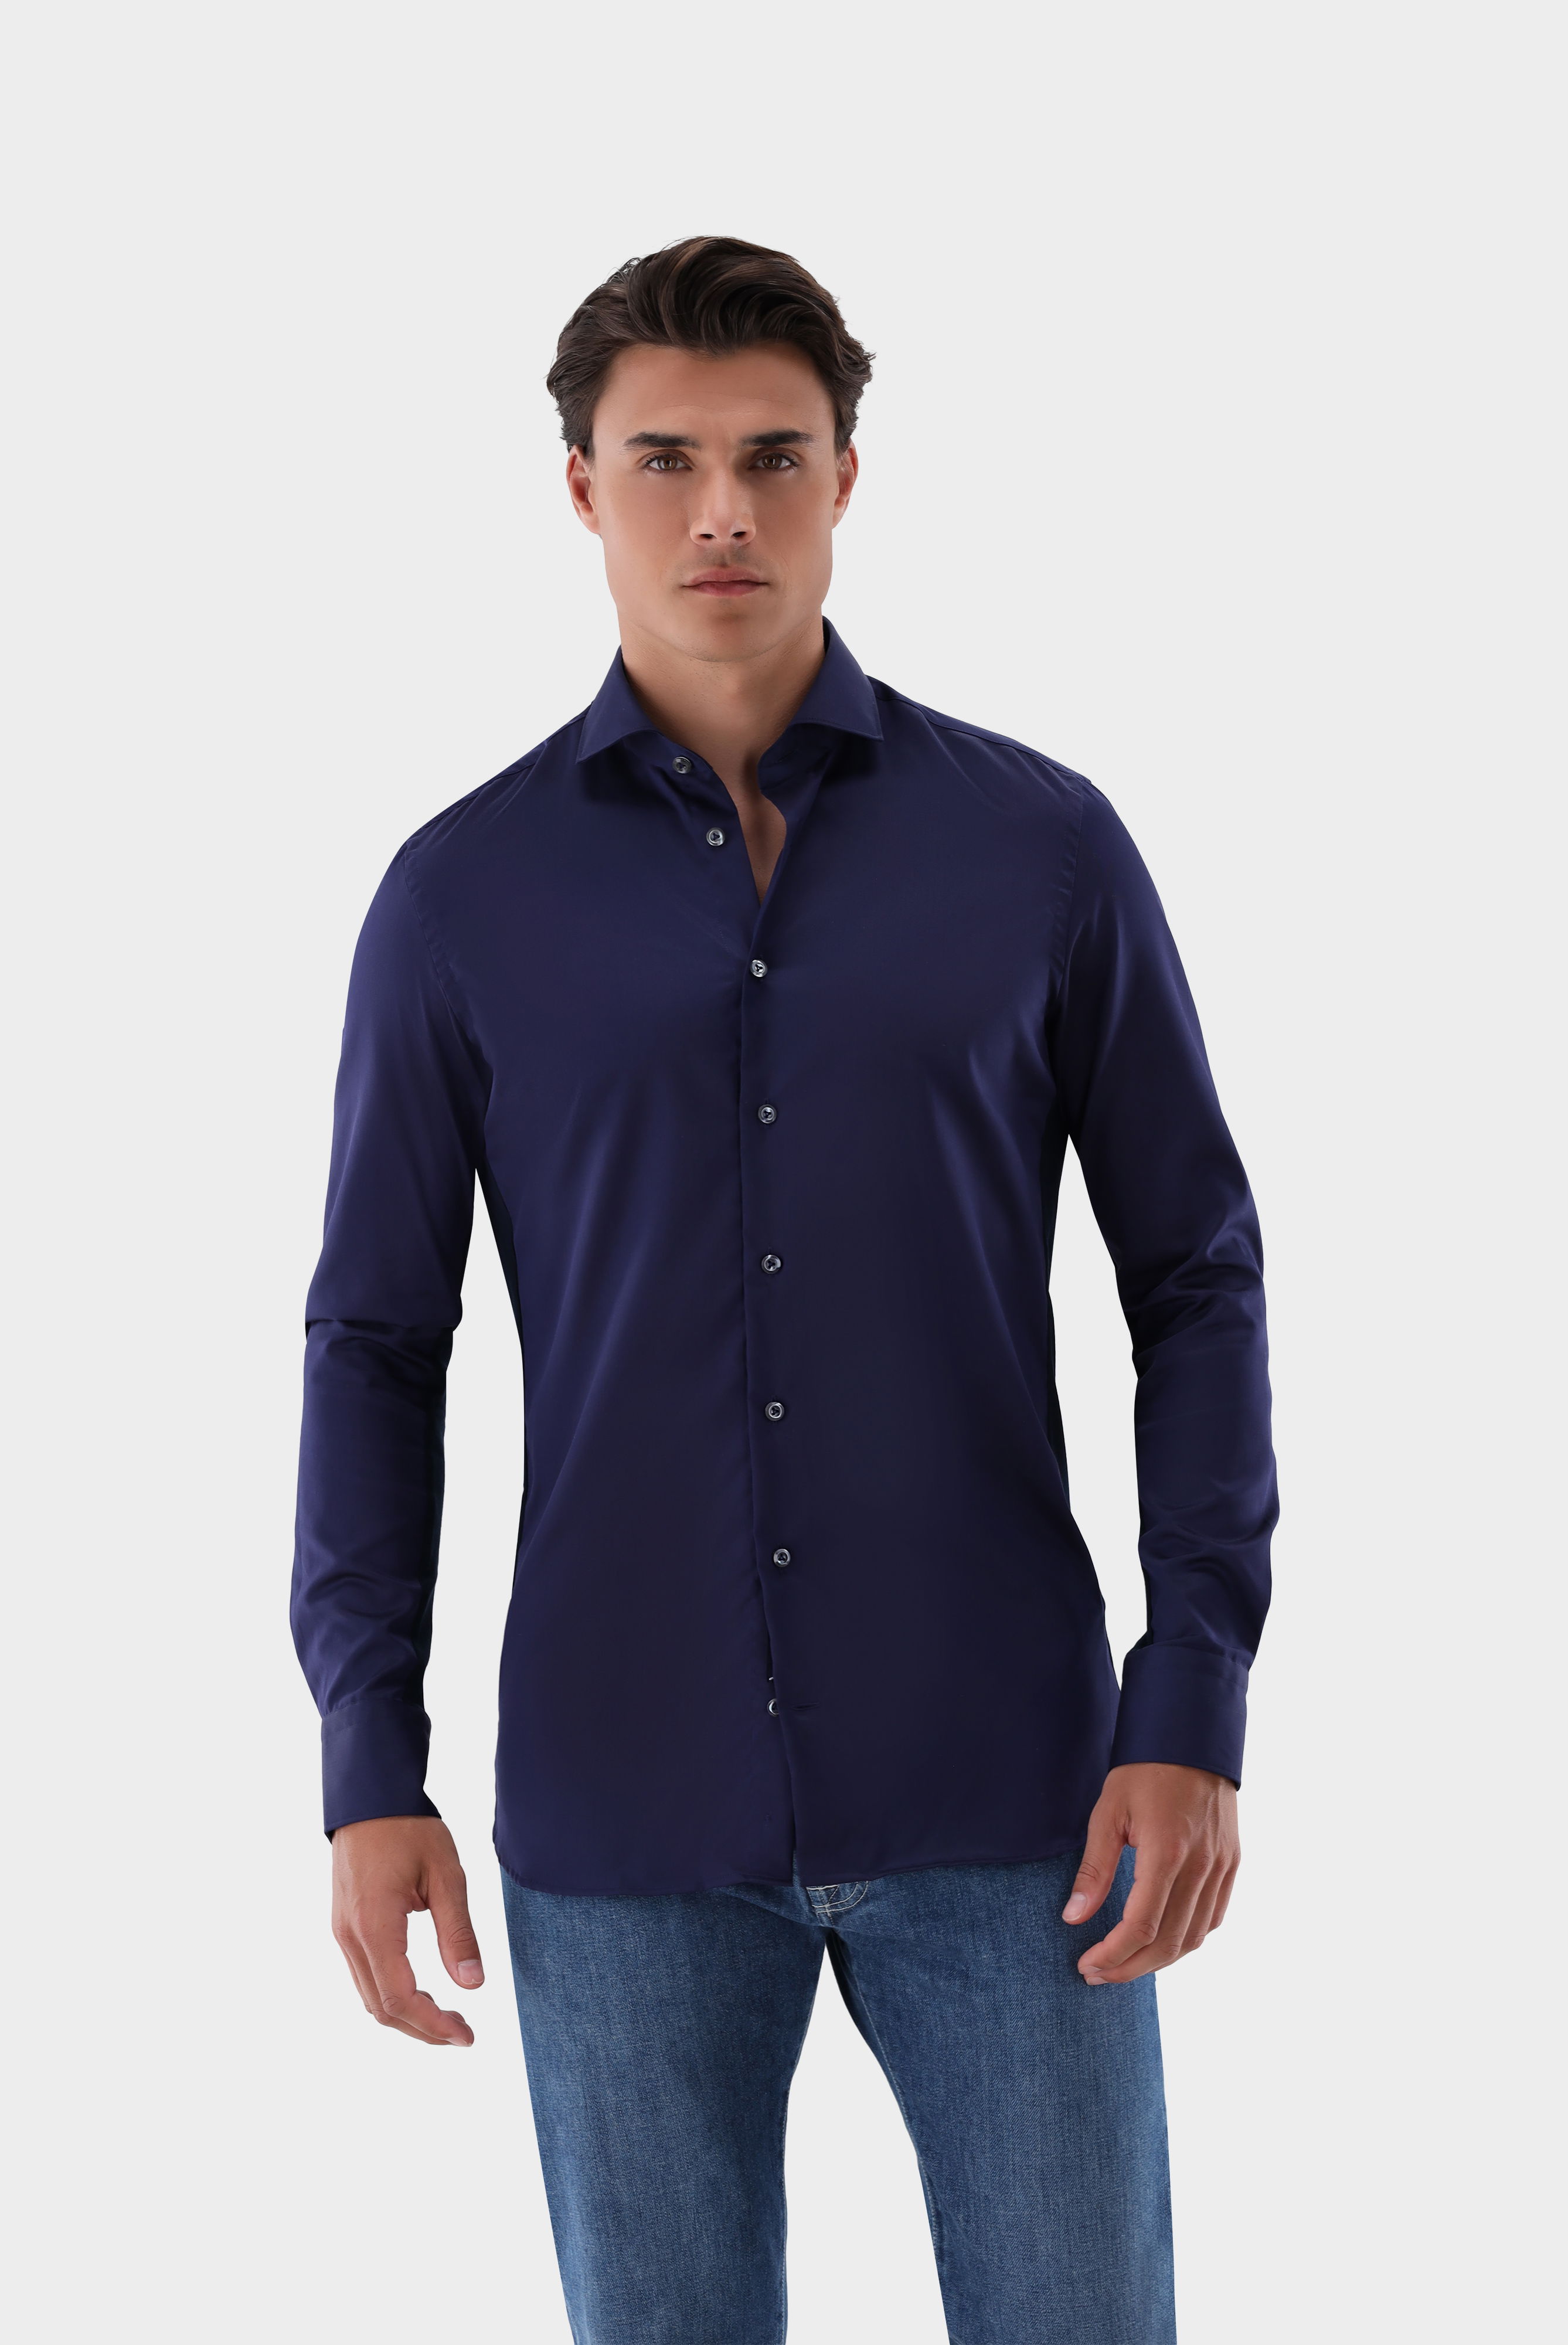 Bügelleichte Hemden+Bügelfreies Hybridshirt mit Jerseyeinsatz Slim Fit+20.2553.0F.132241.790.40